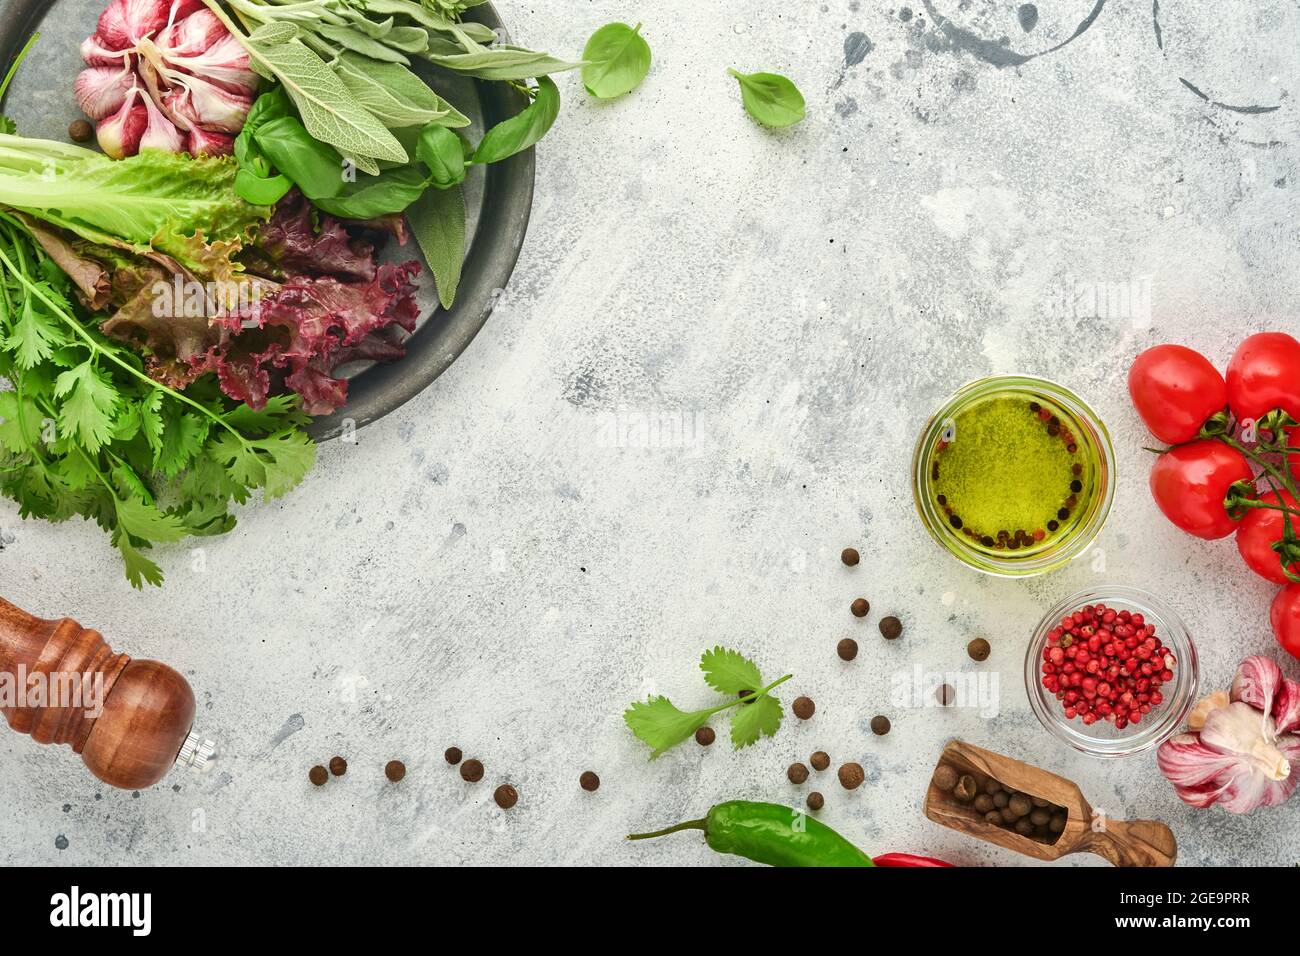 Hintergrund zum Kochen von Speisen. Frischer Safran, Knoblauch, Koriander, Basilikum, Kirschtomaten, Paprika und Olivenöl, Gewürze Kräuter und Gemüse bei hellgrauem sla Stockfoto